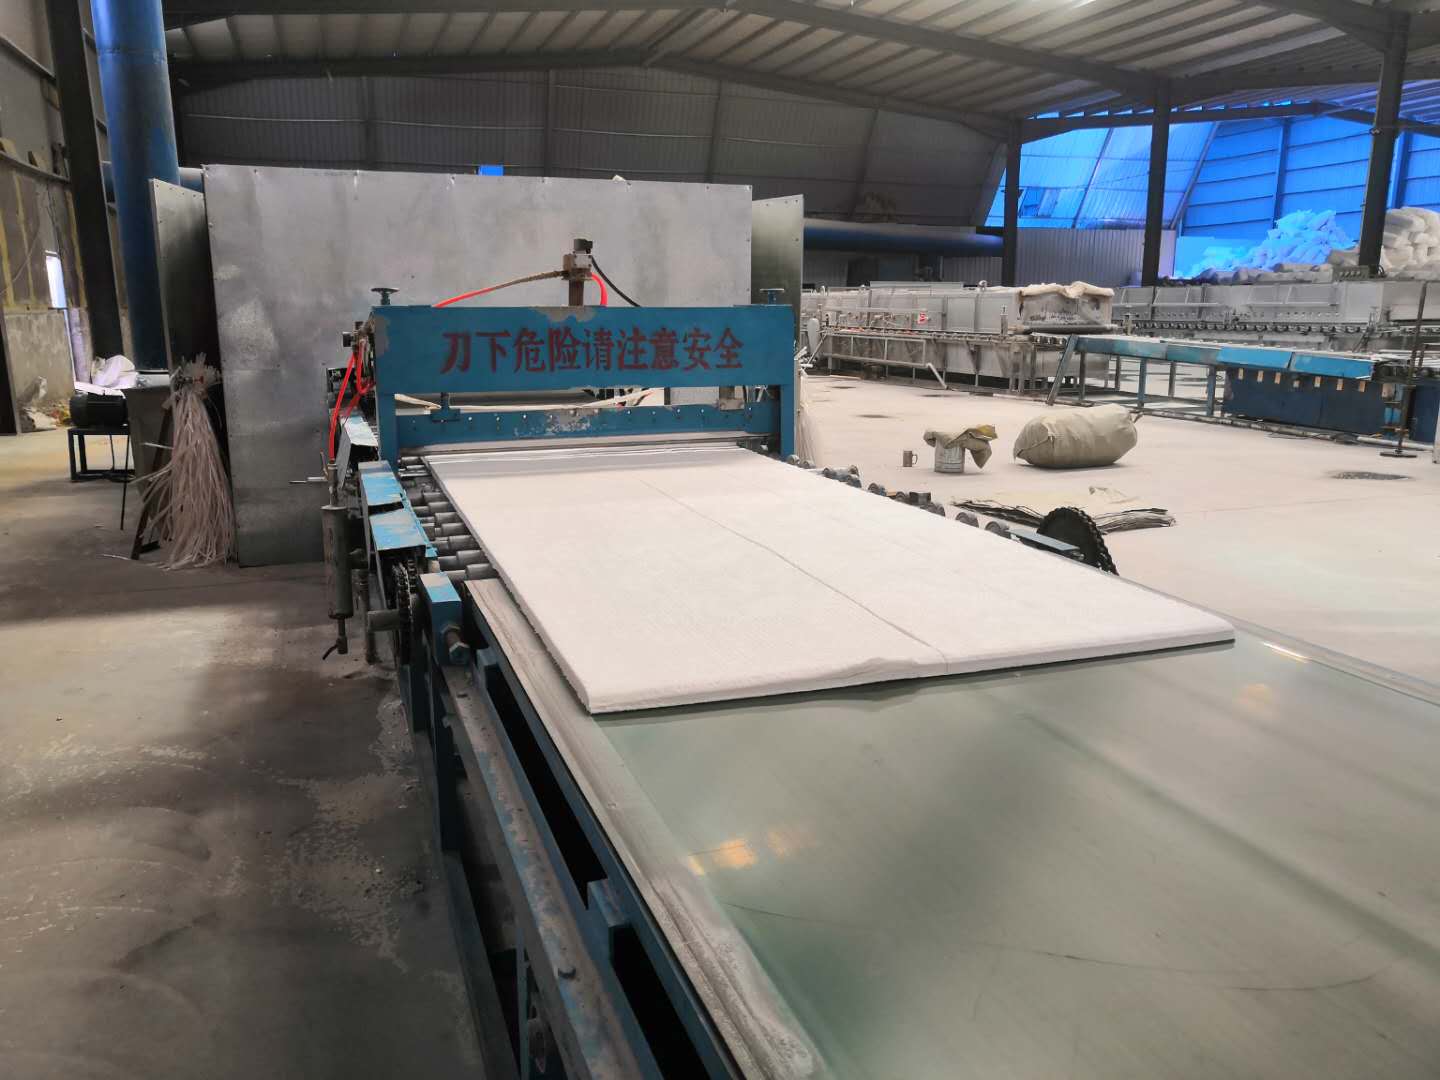 硅酸鋁纖維板是一種非常環保的產品